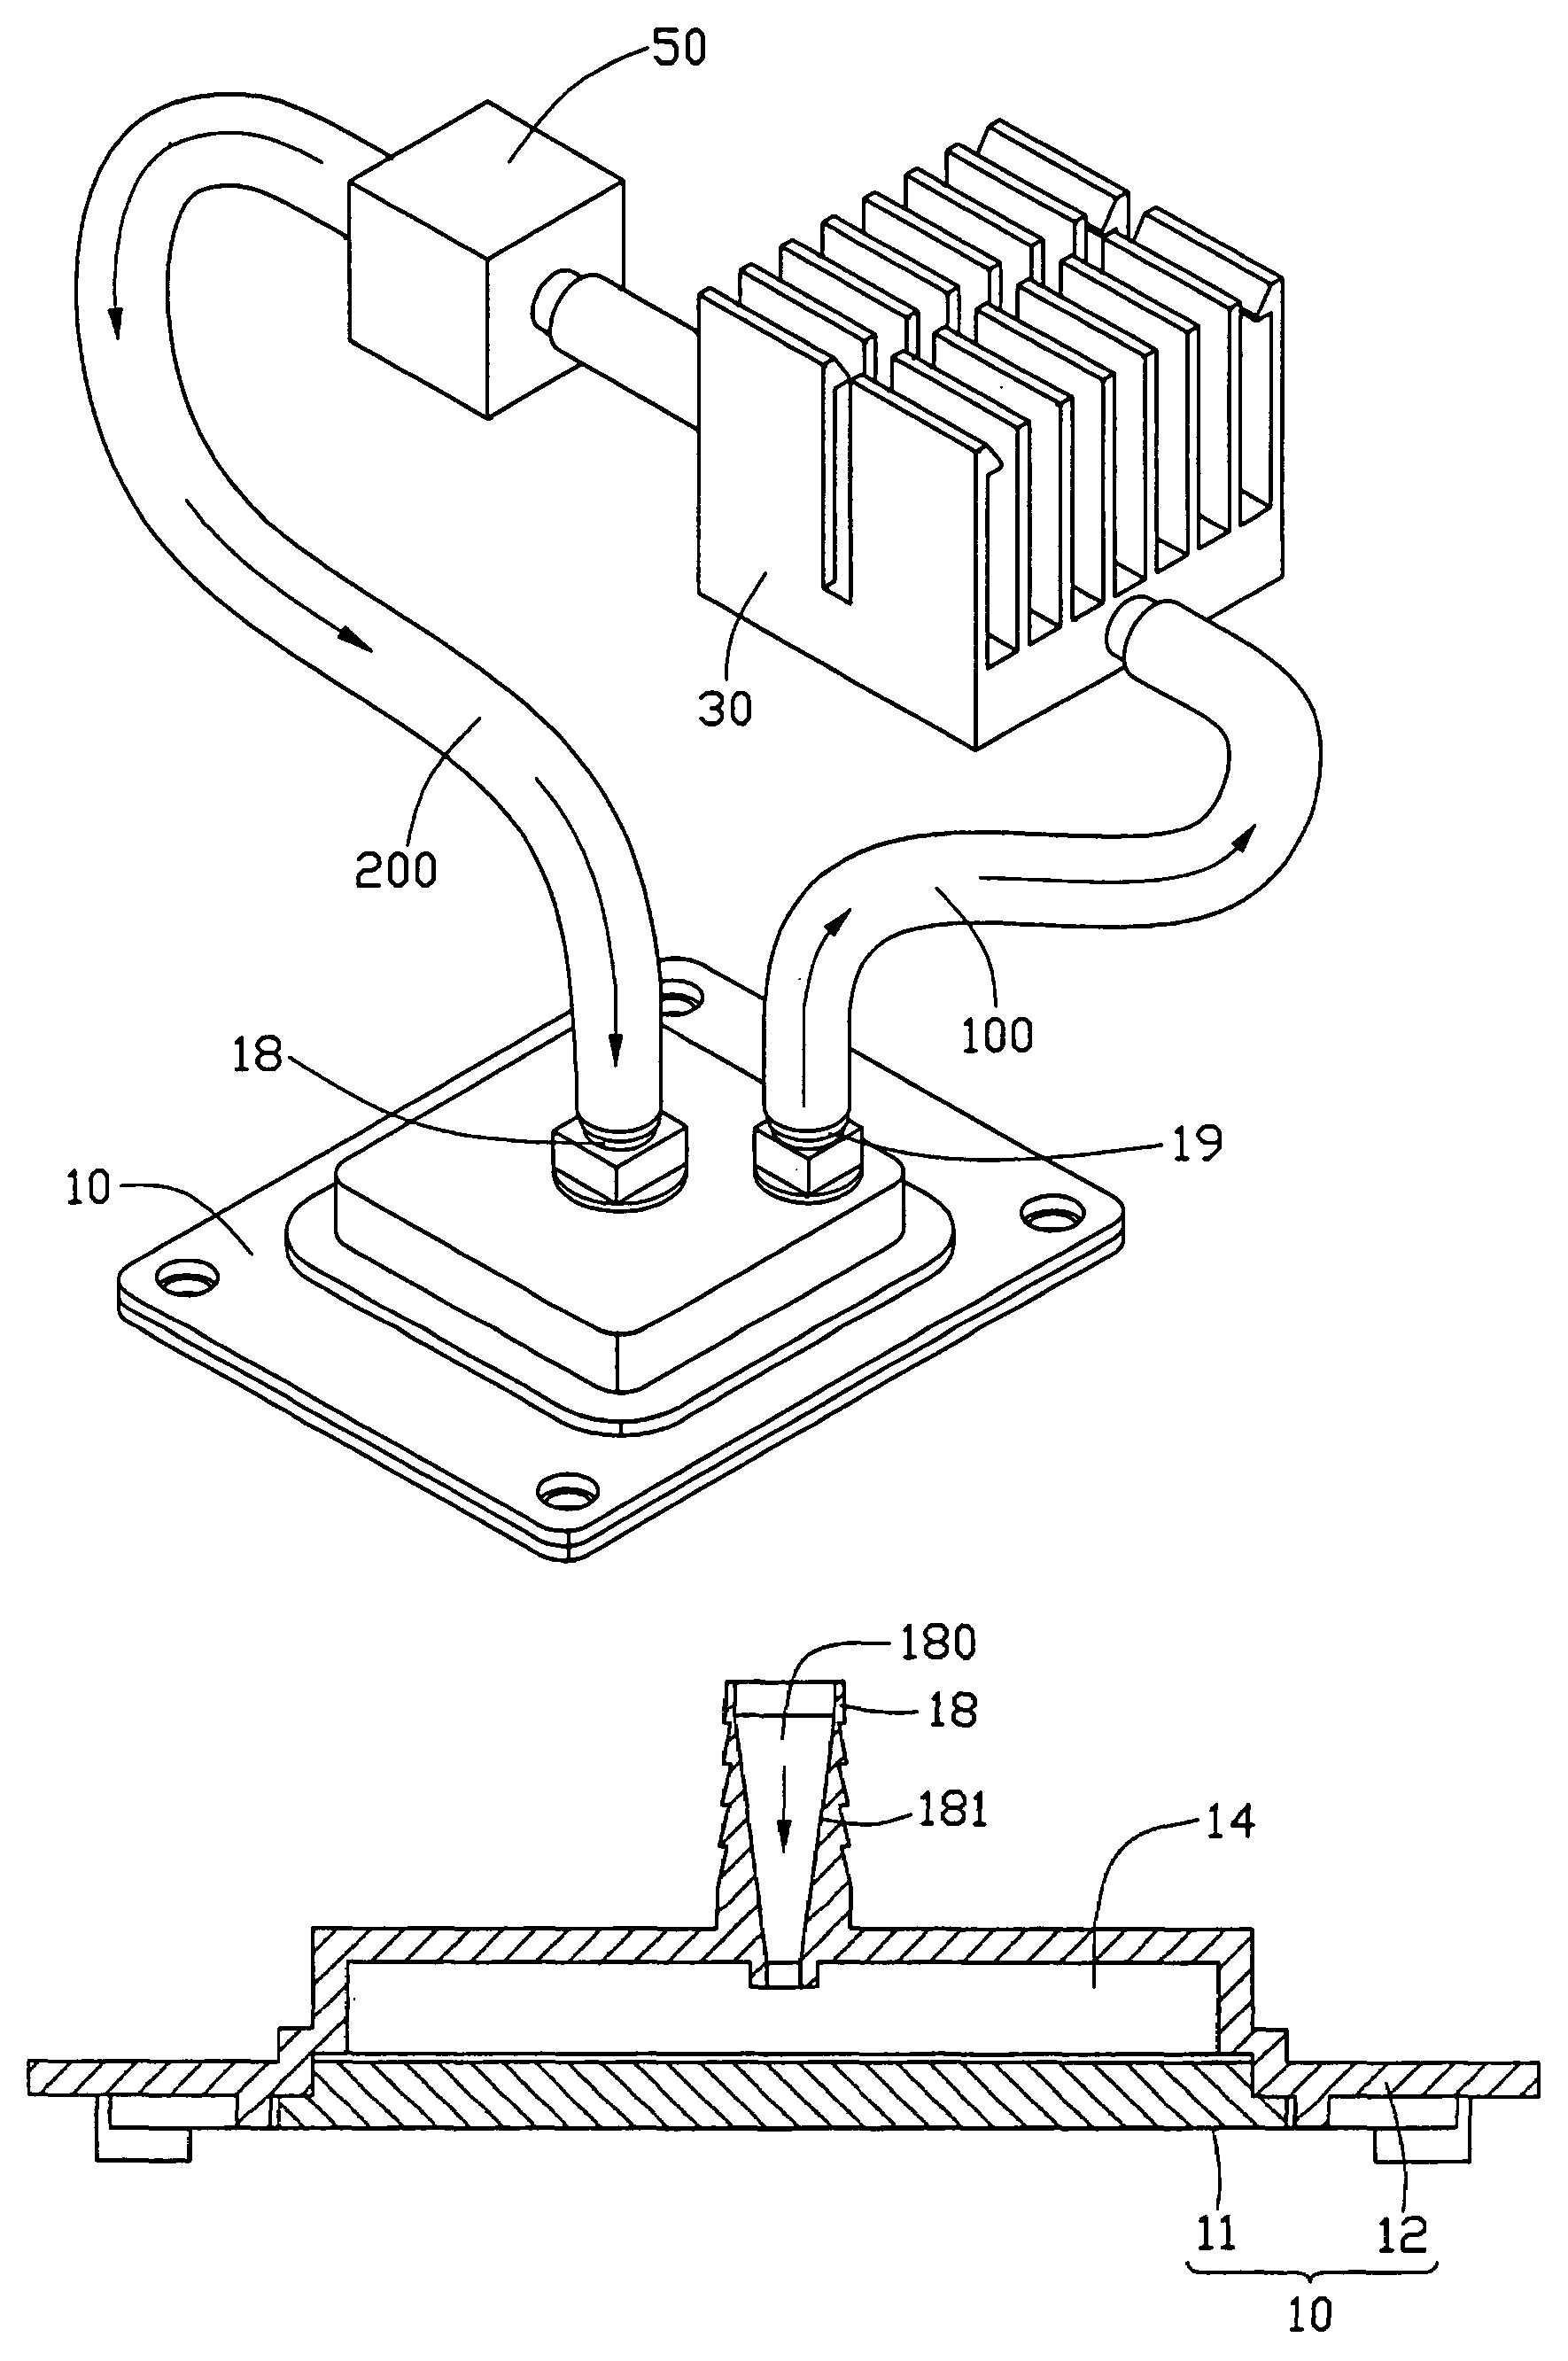 Liquid cooling device